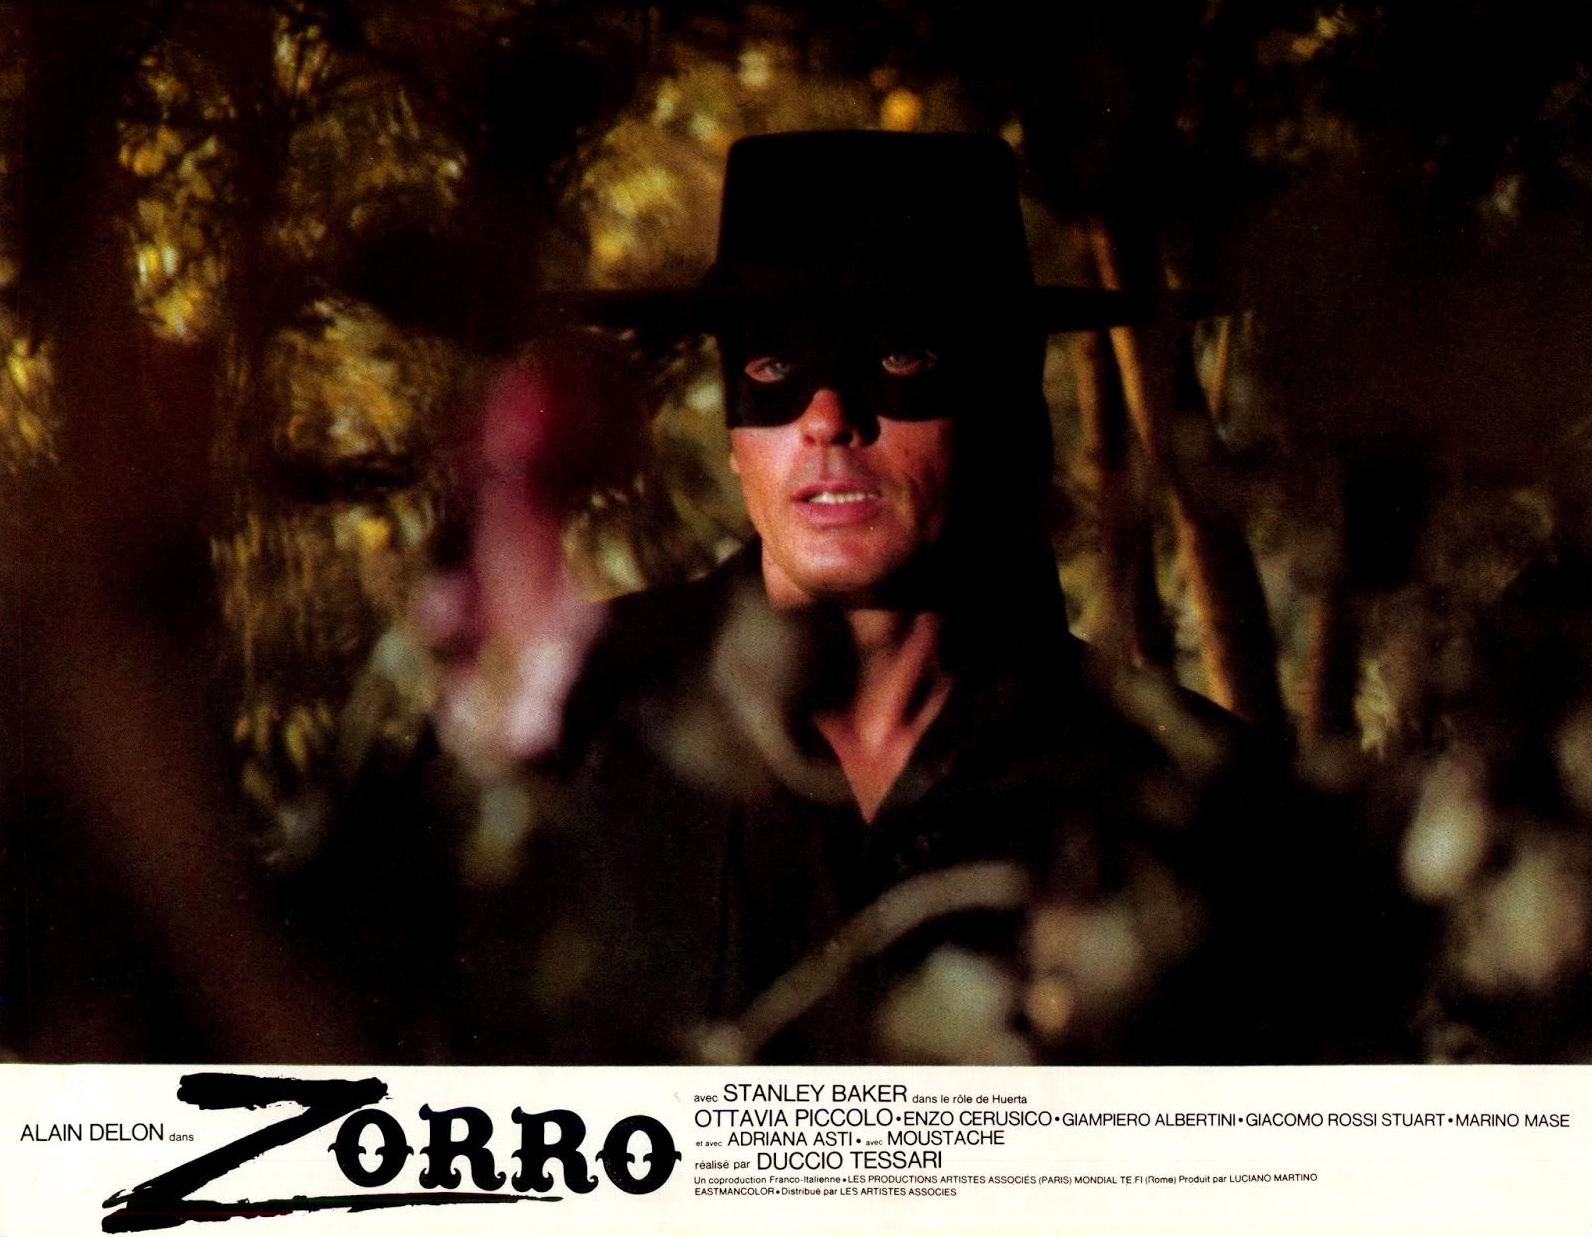 Zorro (1974) Duccio Tessari - Zorro (29.07.1974 / 1974)